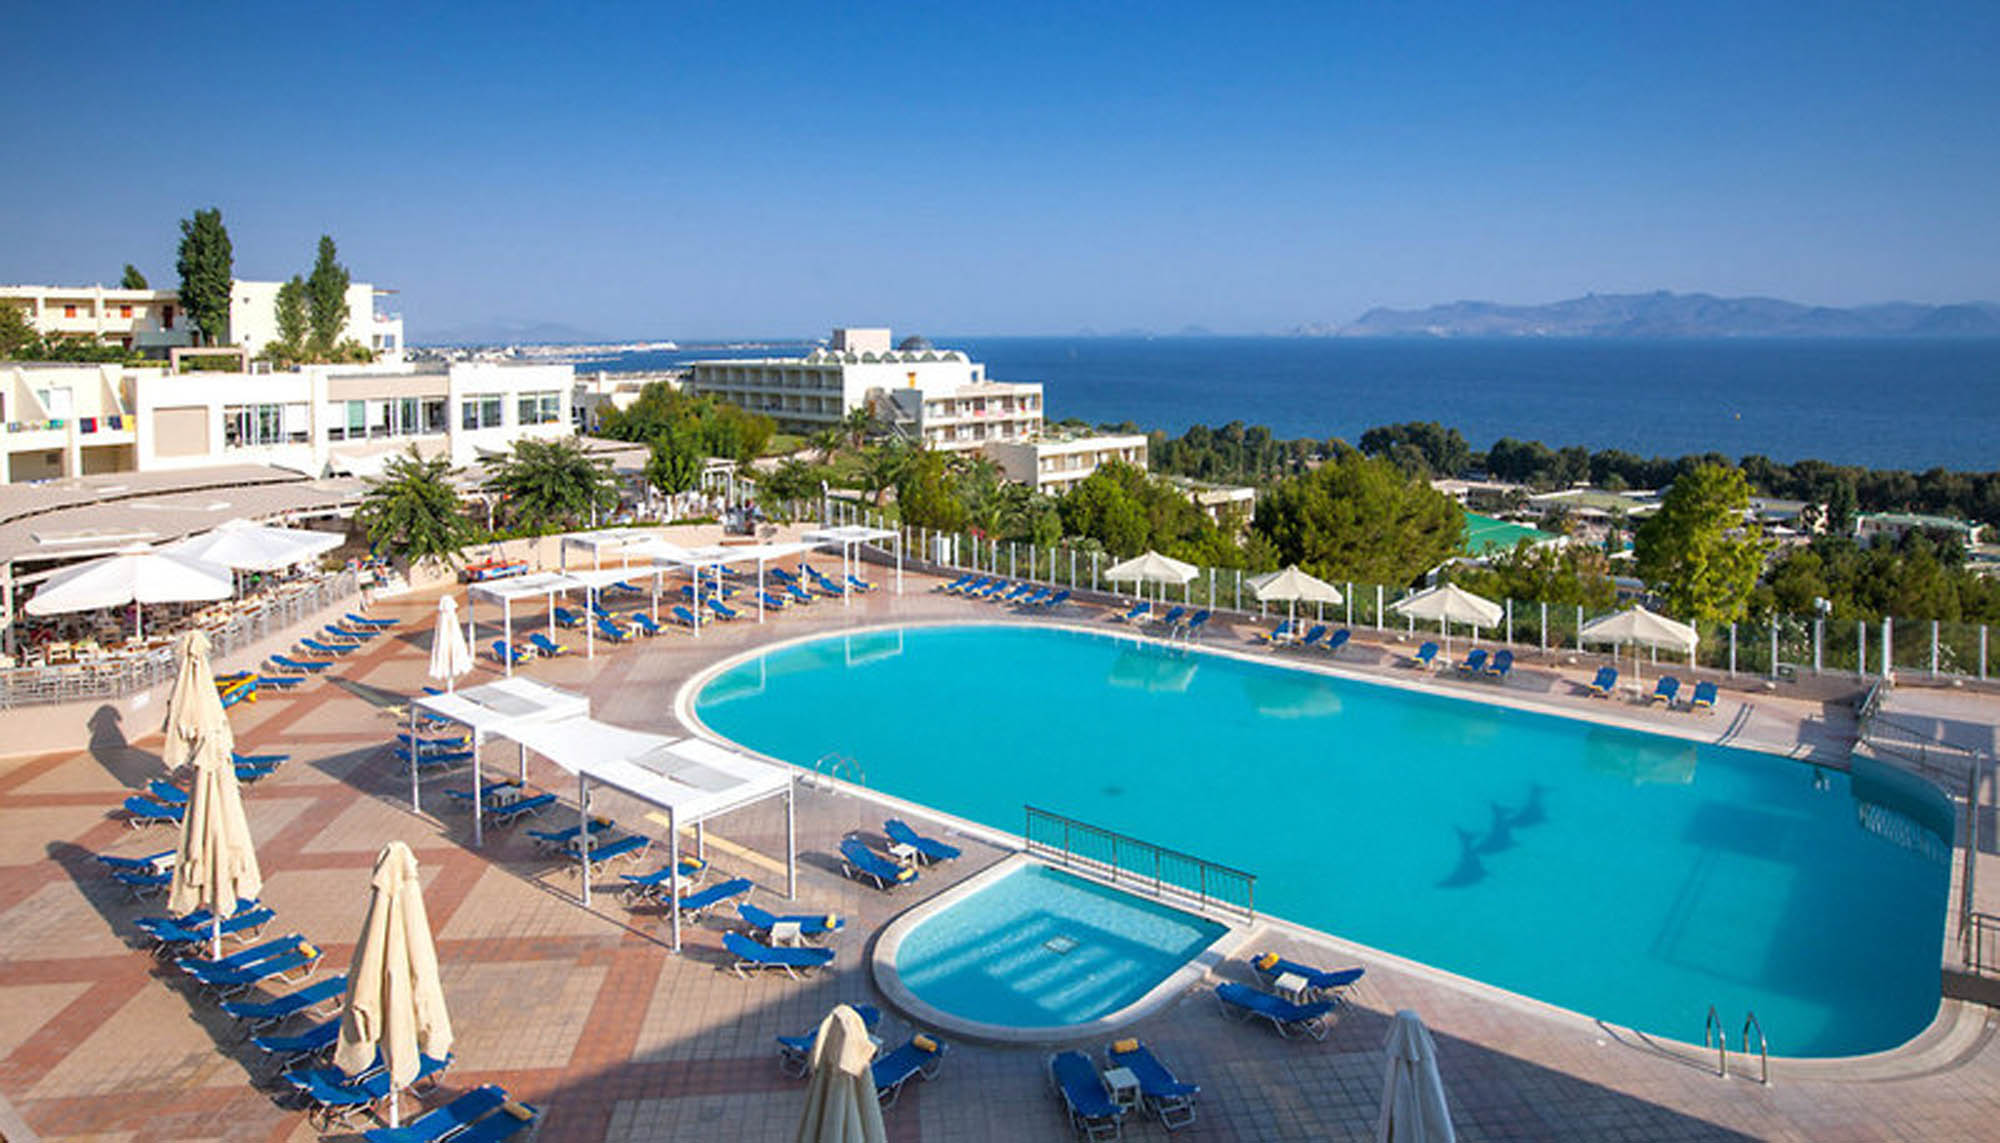 widok na basen w hotelu w grecji, w tle morze oraz niebo